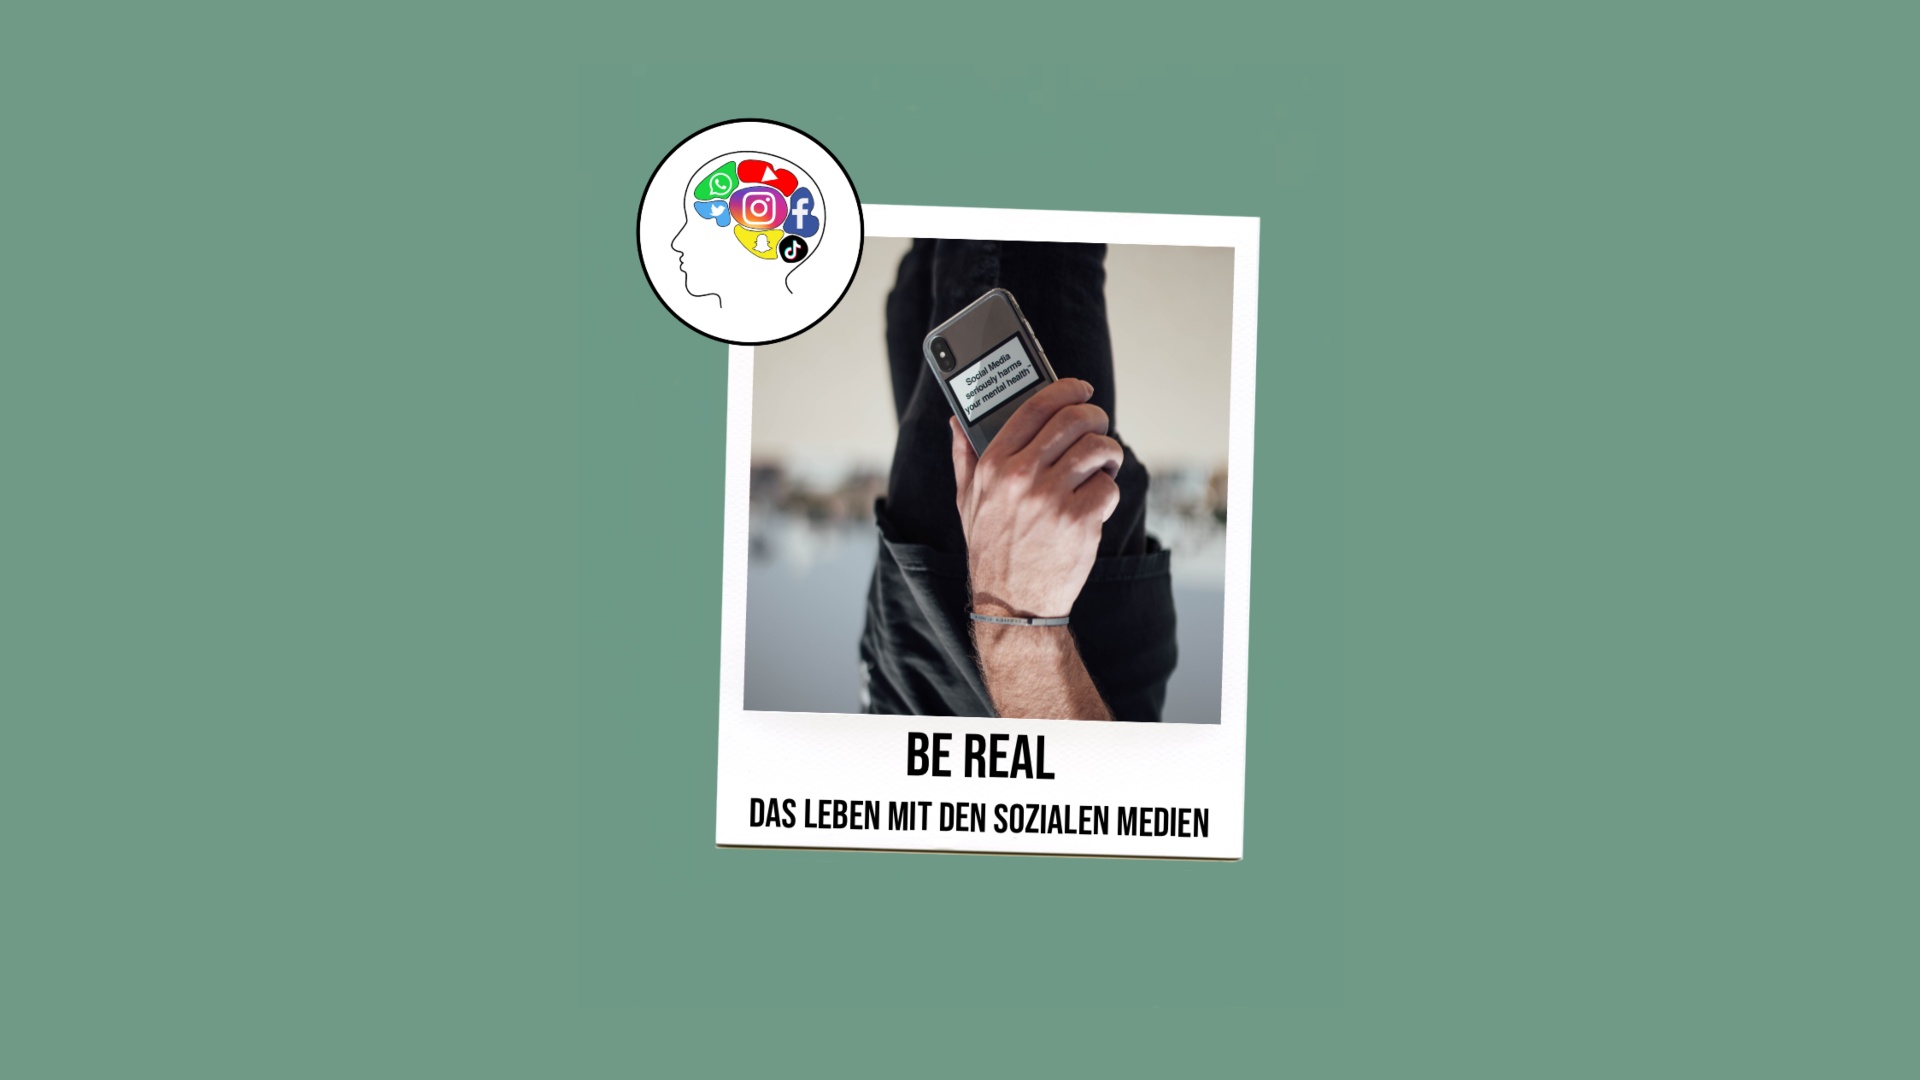 BE Real - Das Leben mit den sozialen Medien  - Eine V+V Arbeit unserer Lernenden im zweiten Lehrjahr